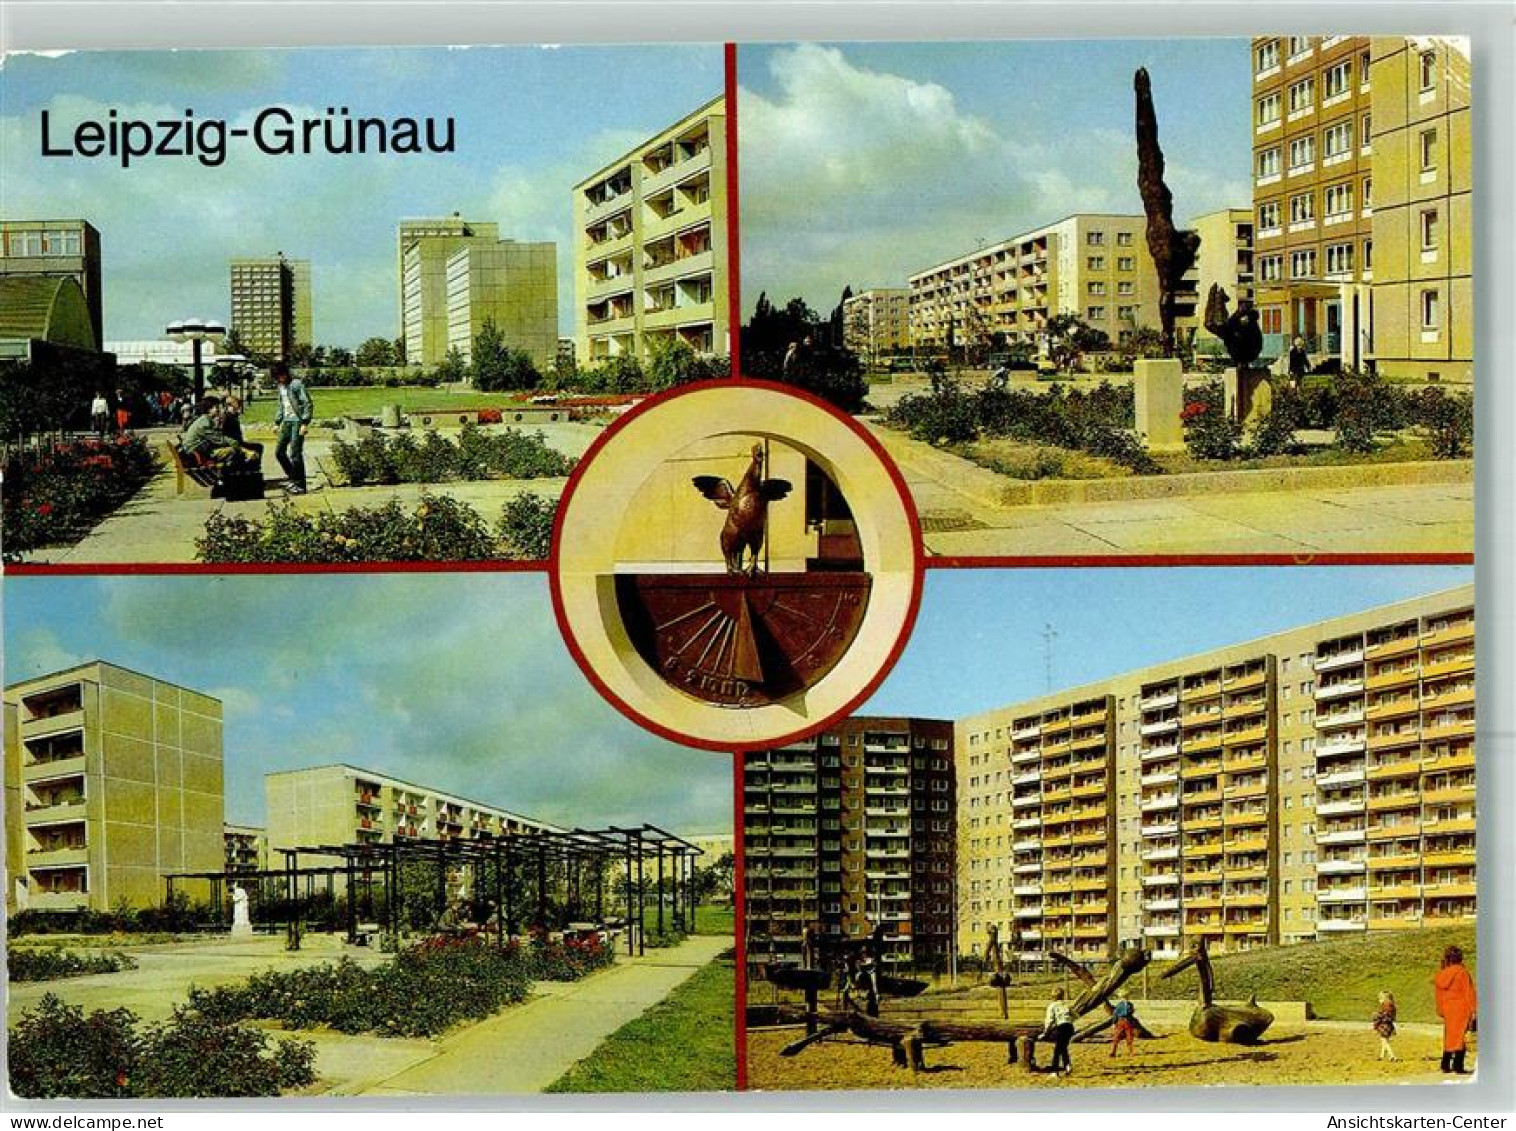 39458807 - Gruenau - Leipzig